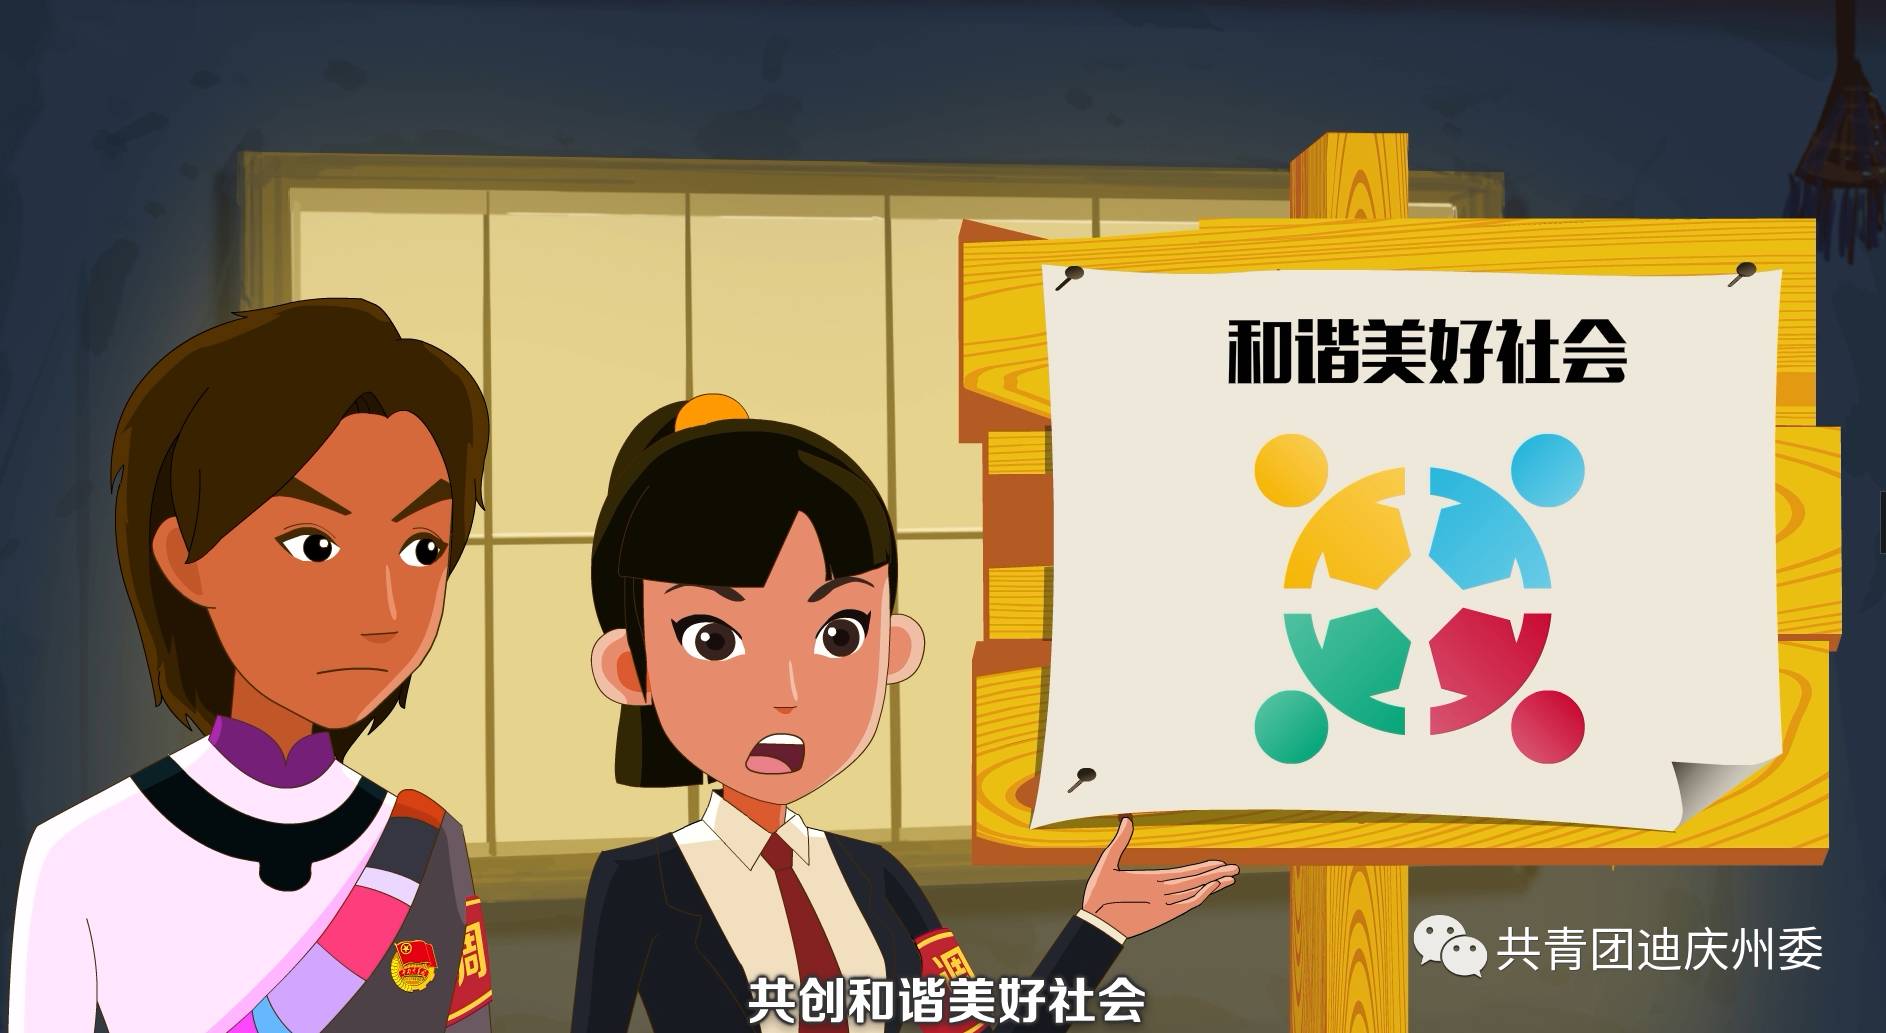 普法动漫|迪庆州青少年"法律知识七进"教育宣传片